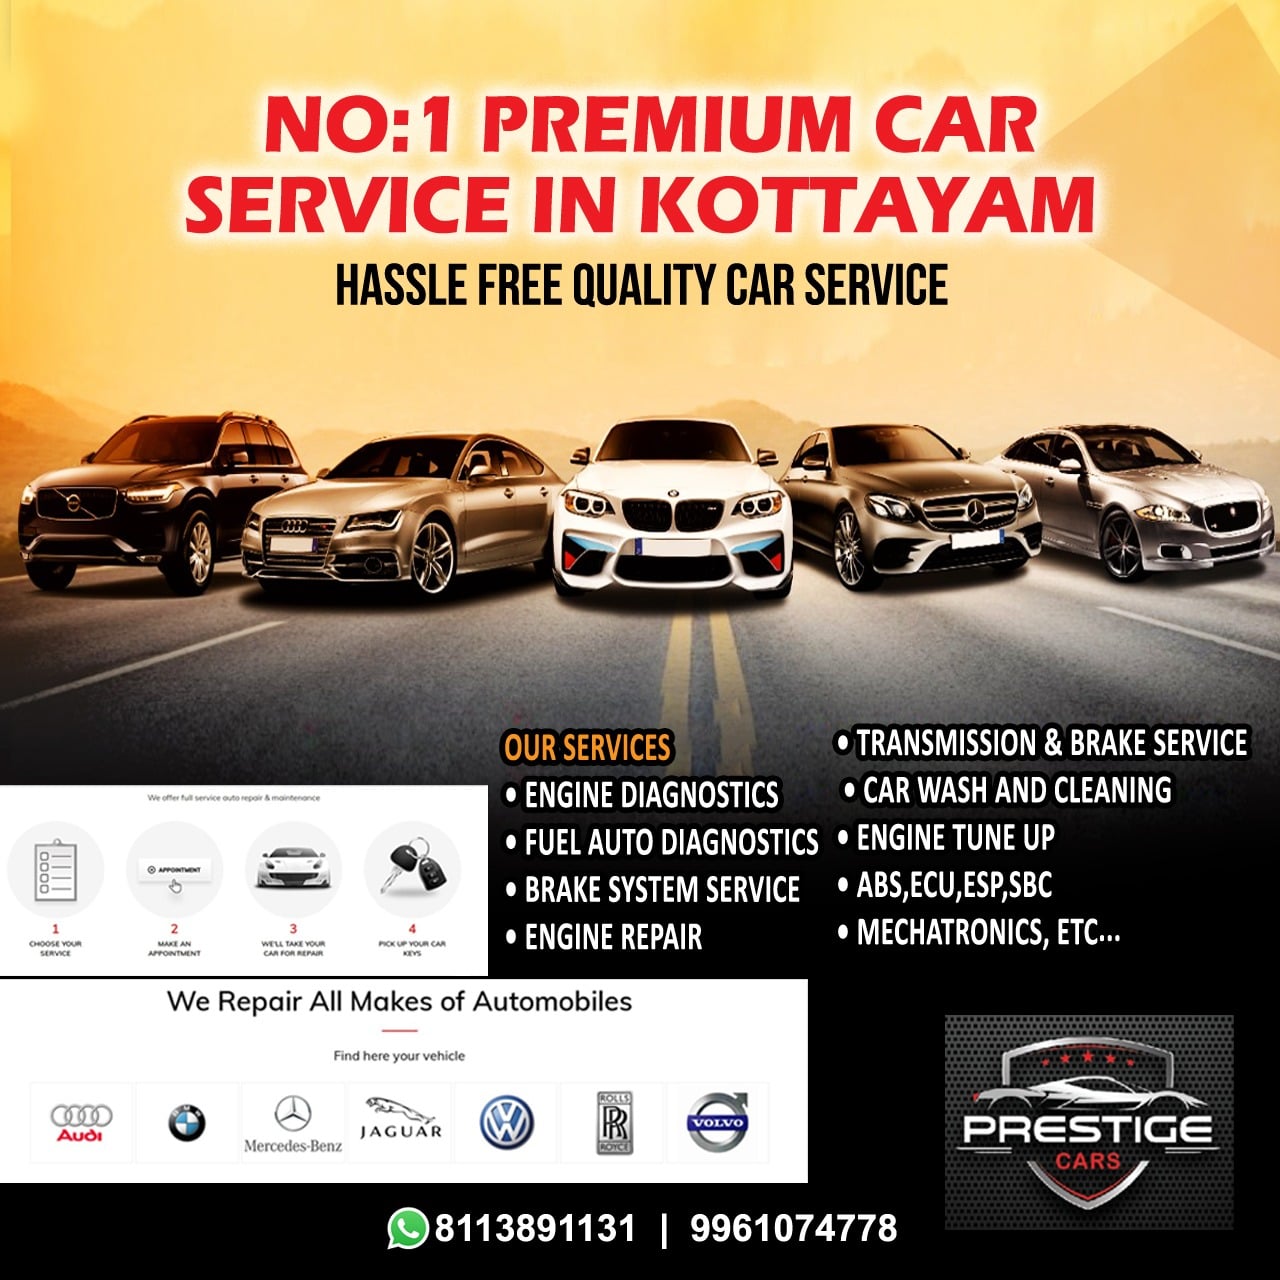 Prestige Premium Cars Service in Kottayam